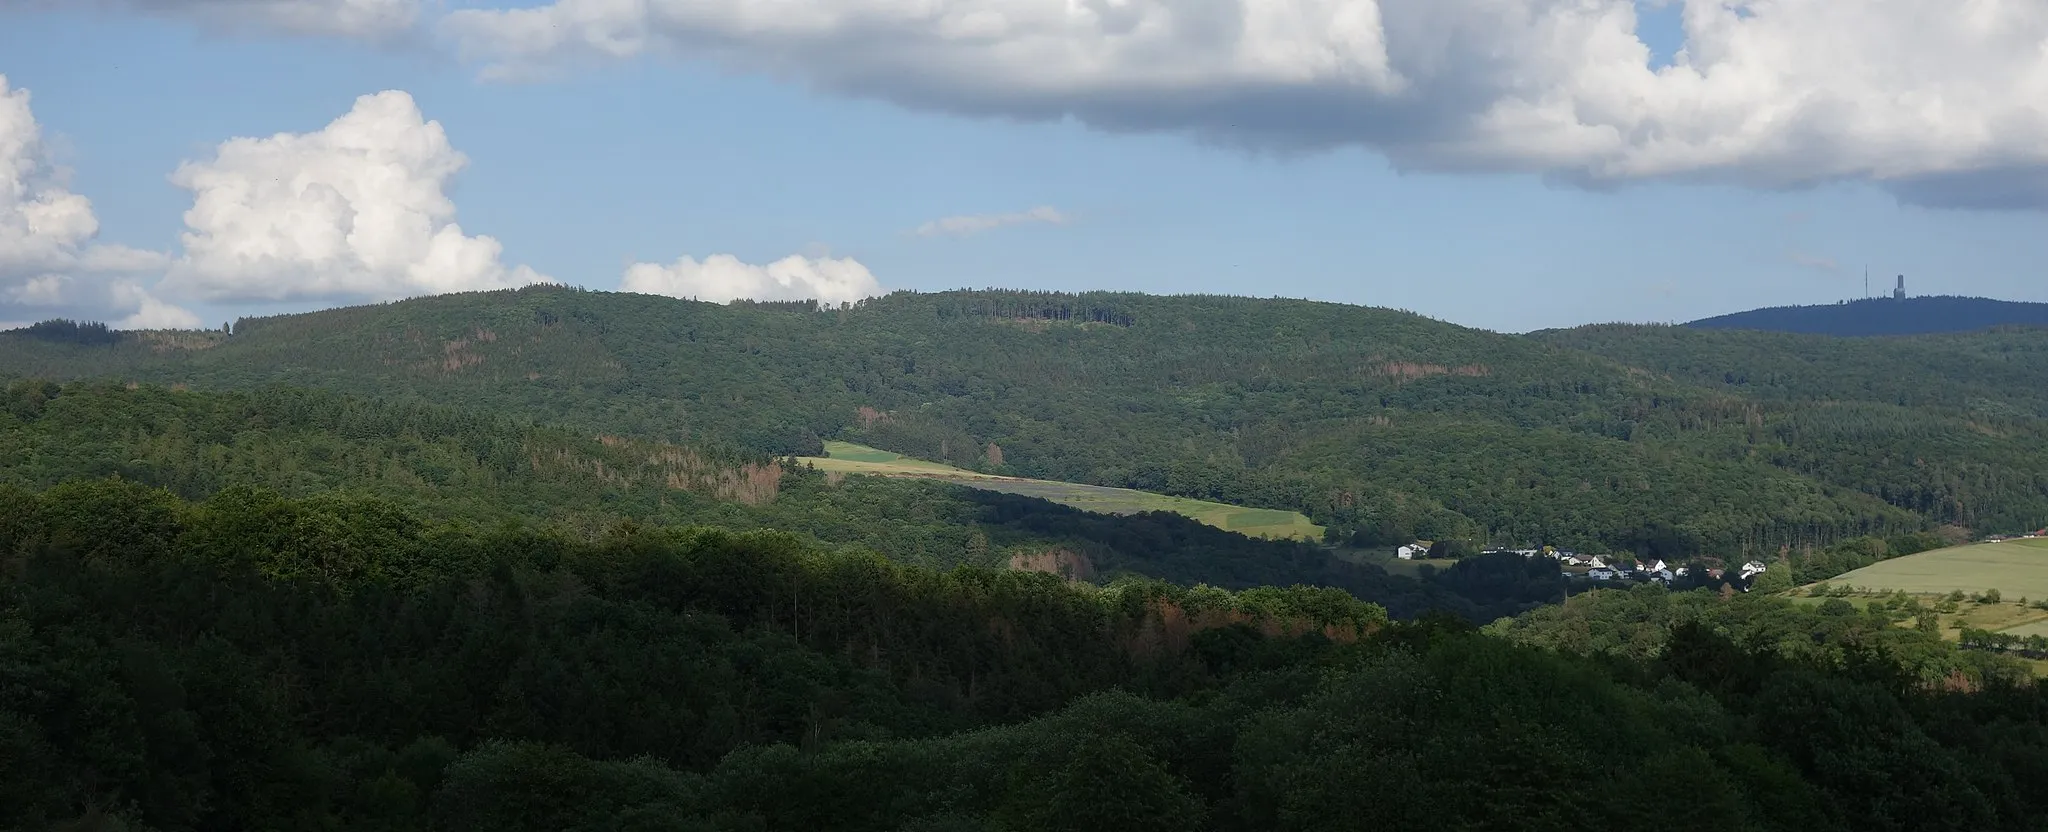 Photo showing: Windhain über Waldems-Wüstems von der Siedlung Reinborn gesehen, aus Richtung Westen. Links im Bildmittelgrund der Berg "Burg", auf dem sich der Ringwall Waldems befindet